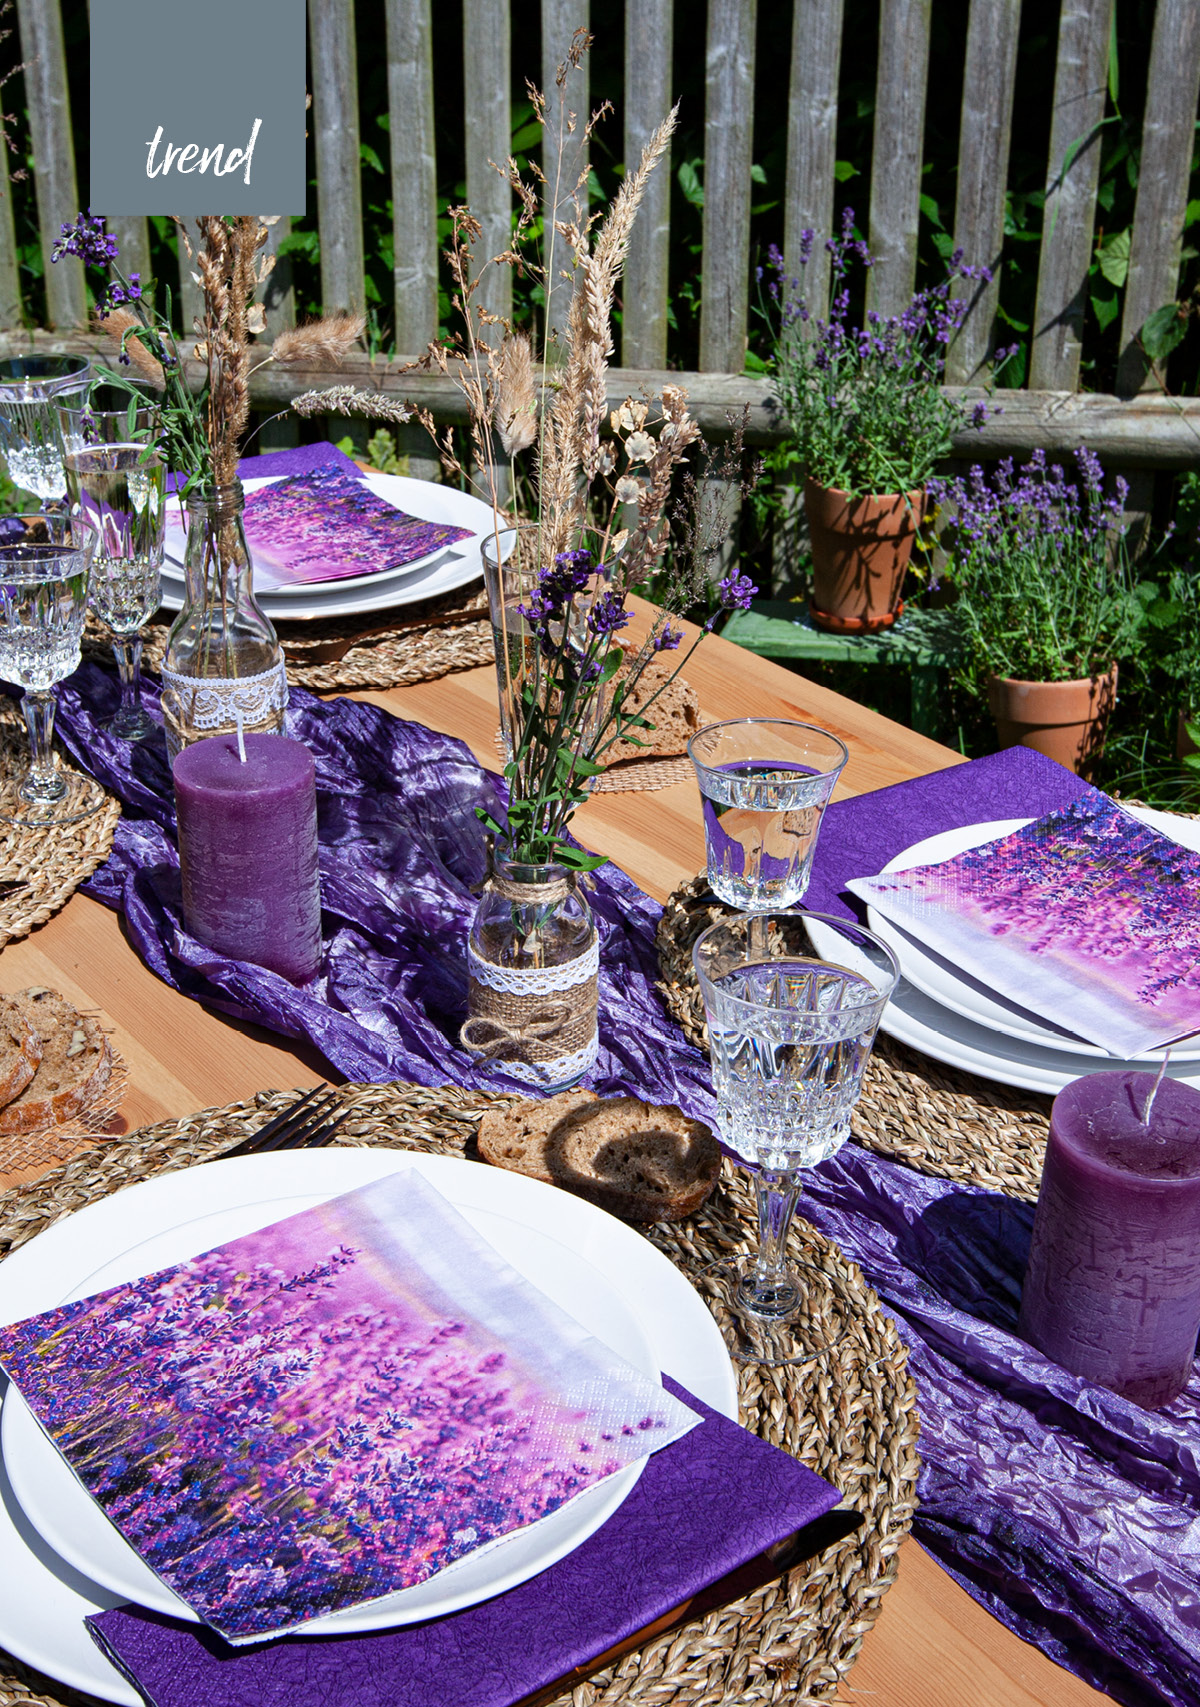 Ein sommerlich gedeckter Tisch in Lilatönen. Man kann den Lavendel auf der Serviette förmlich riechen.